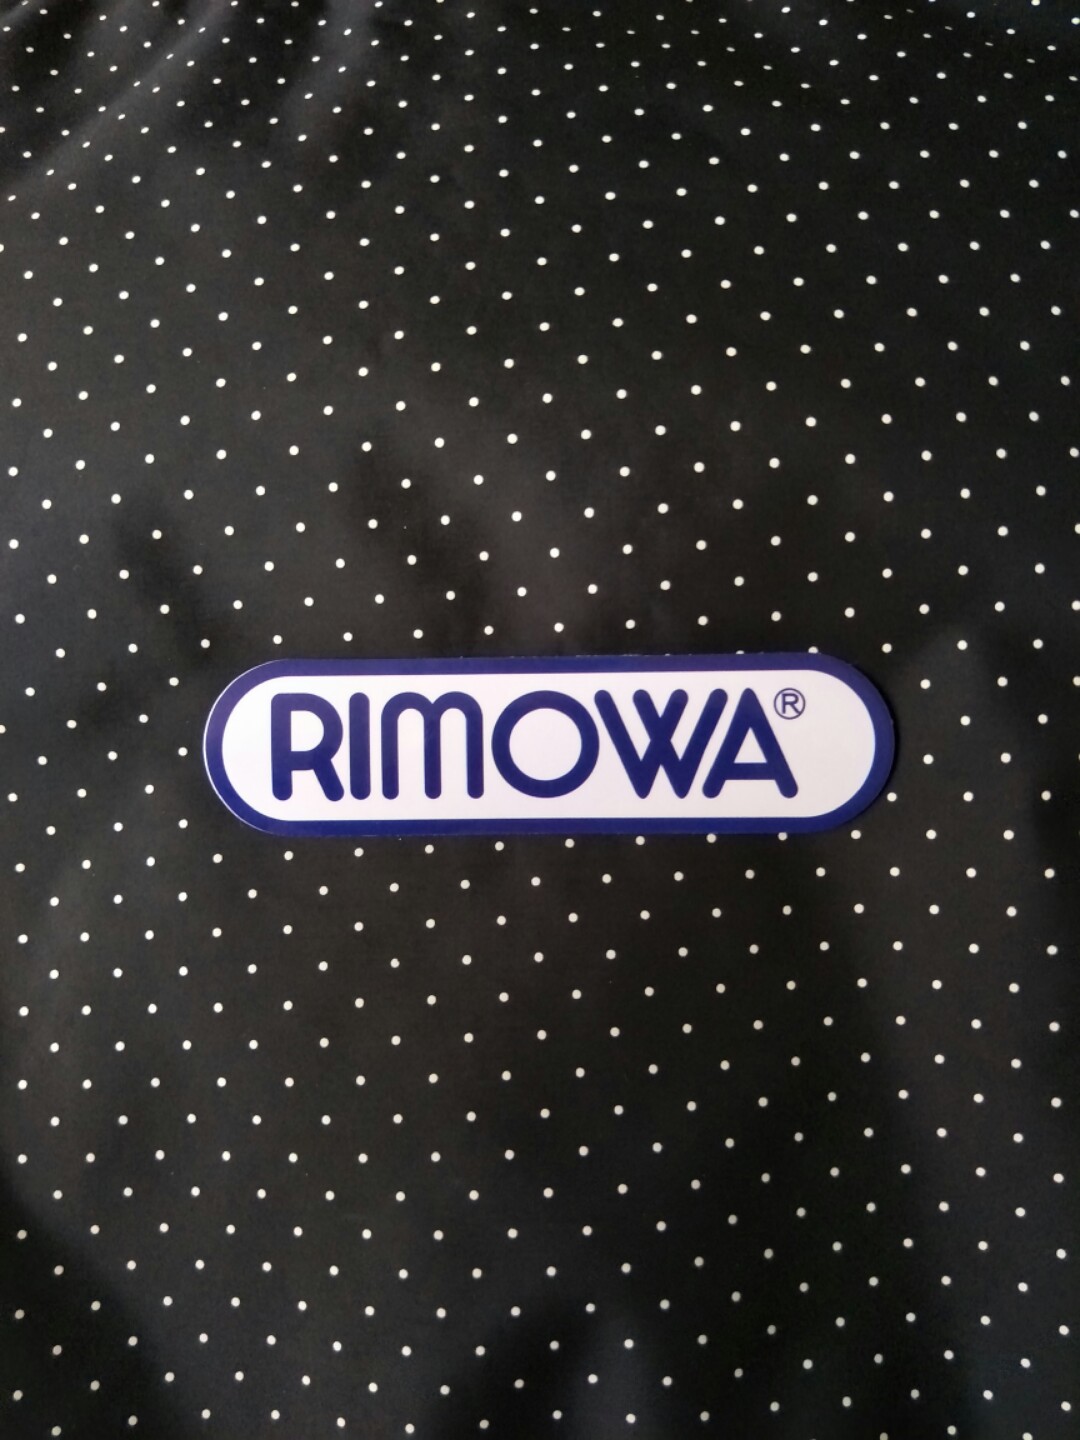 rimowa stickers setup